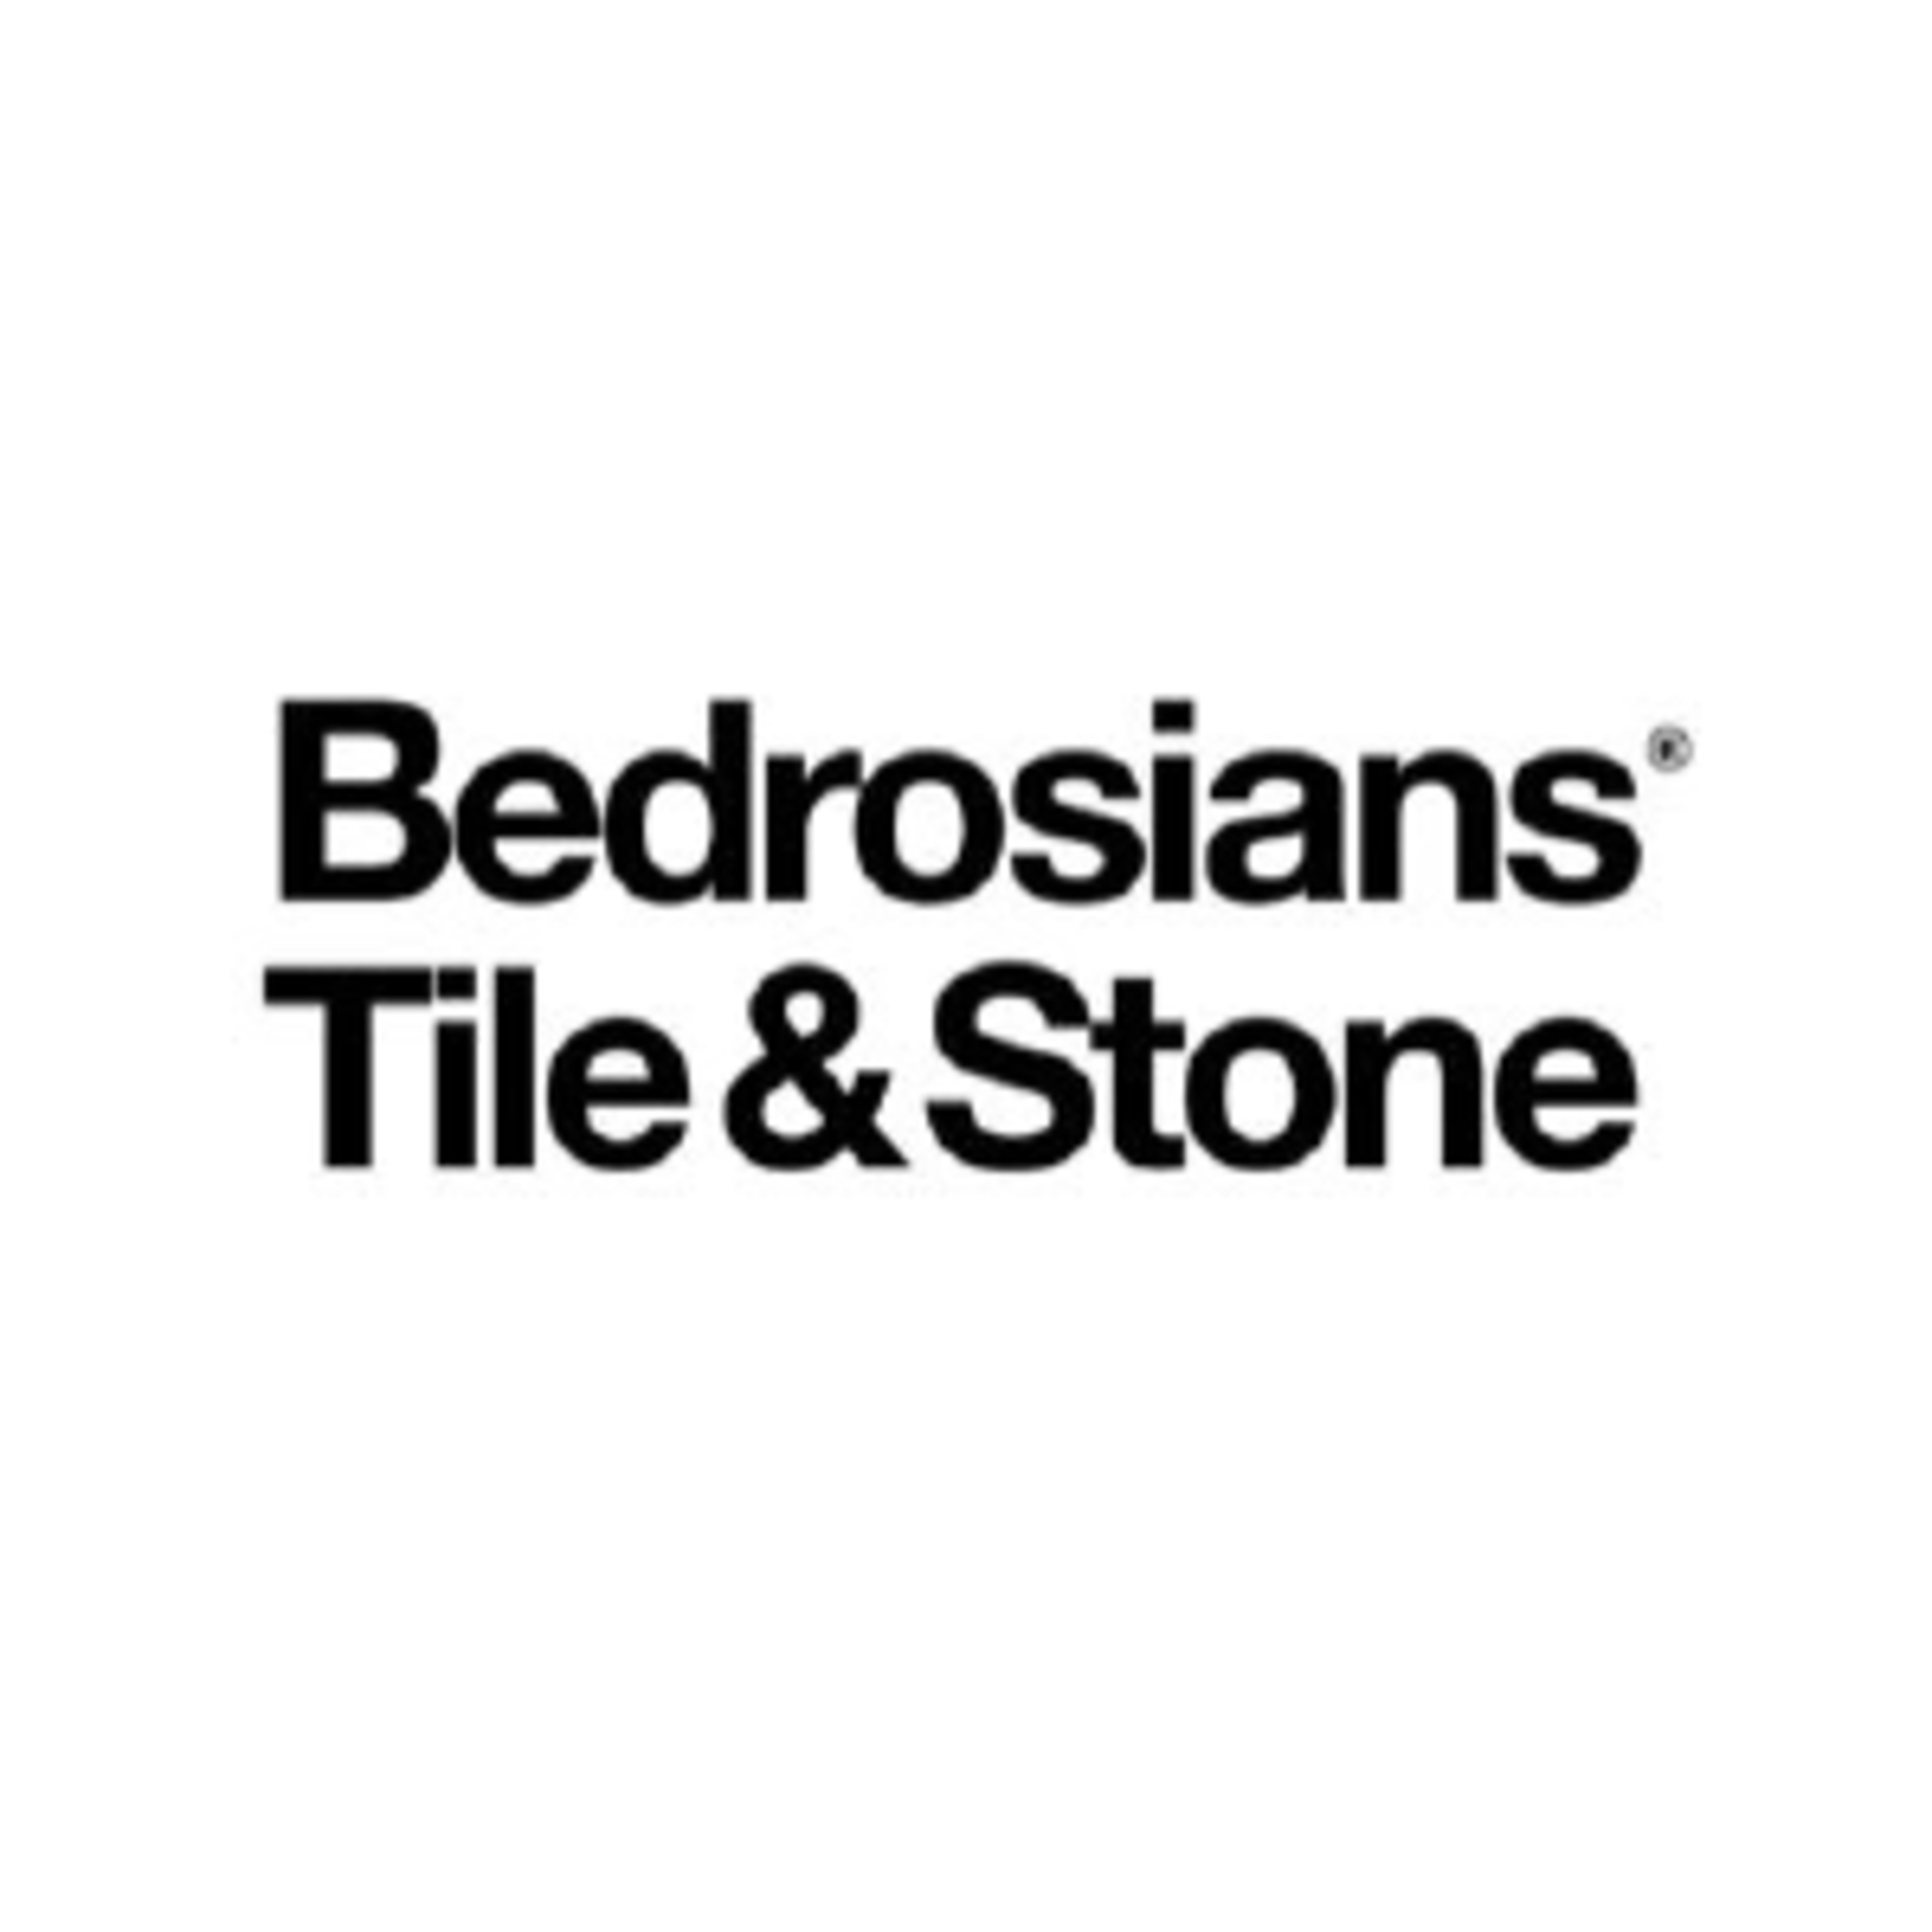 Bedrosians Tile & Stone Code